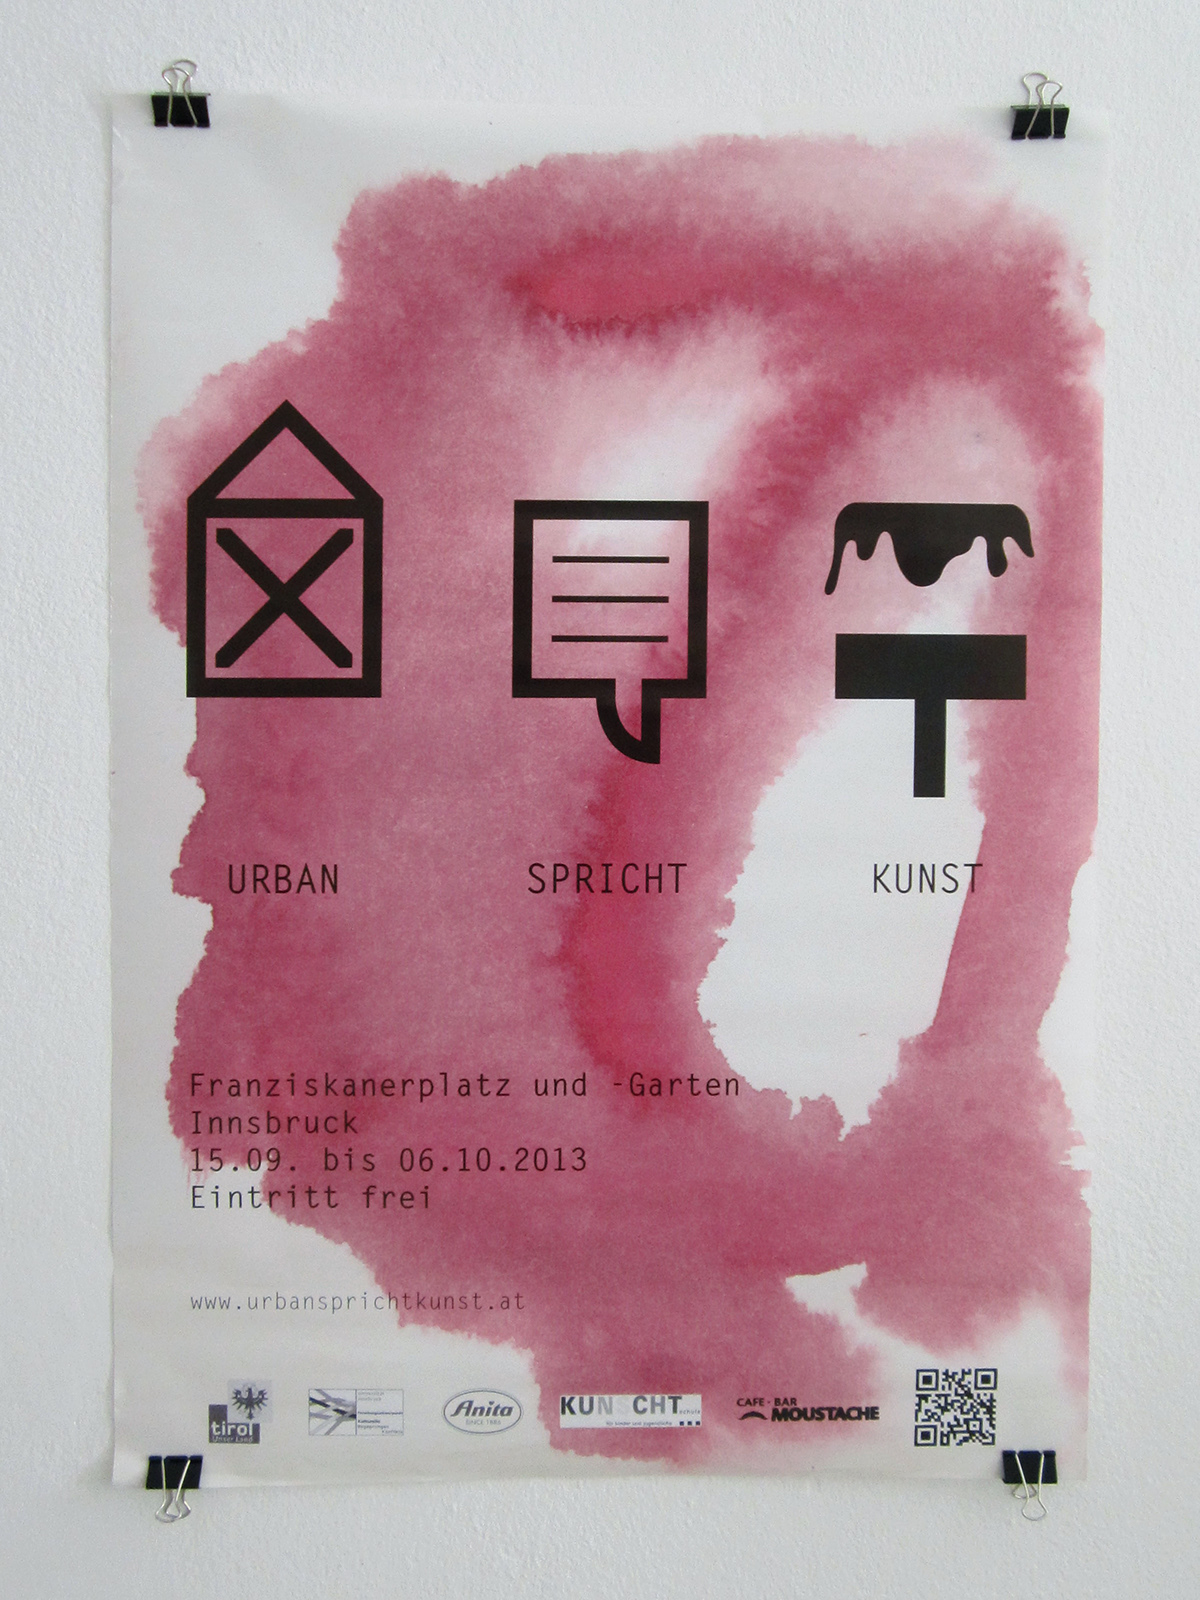 UrbanSprichtKunst icons poster flyer